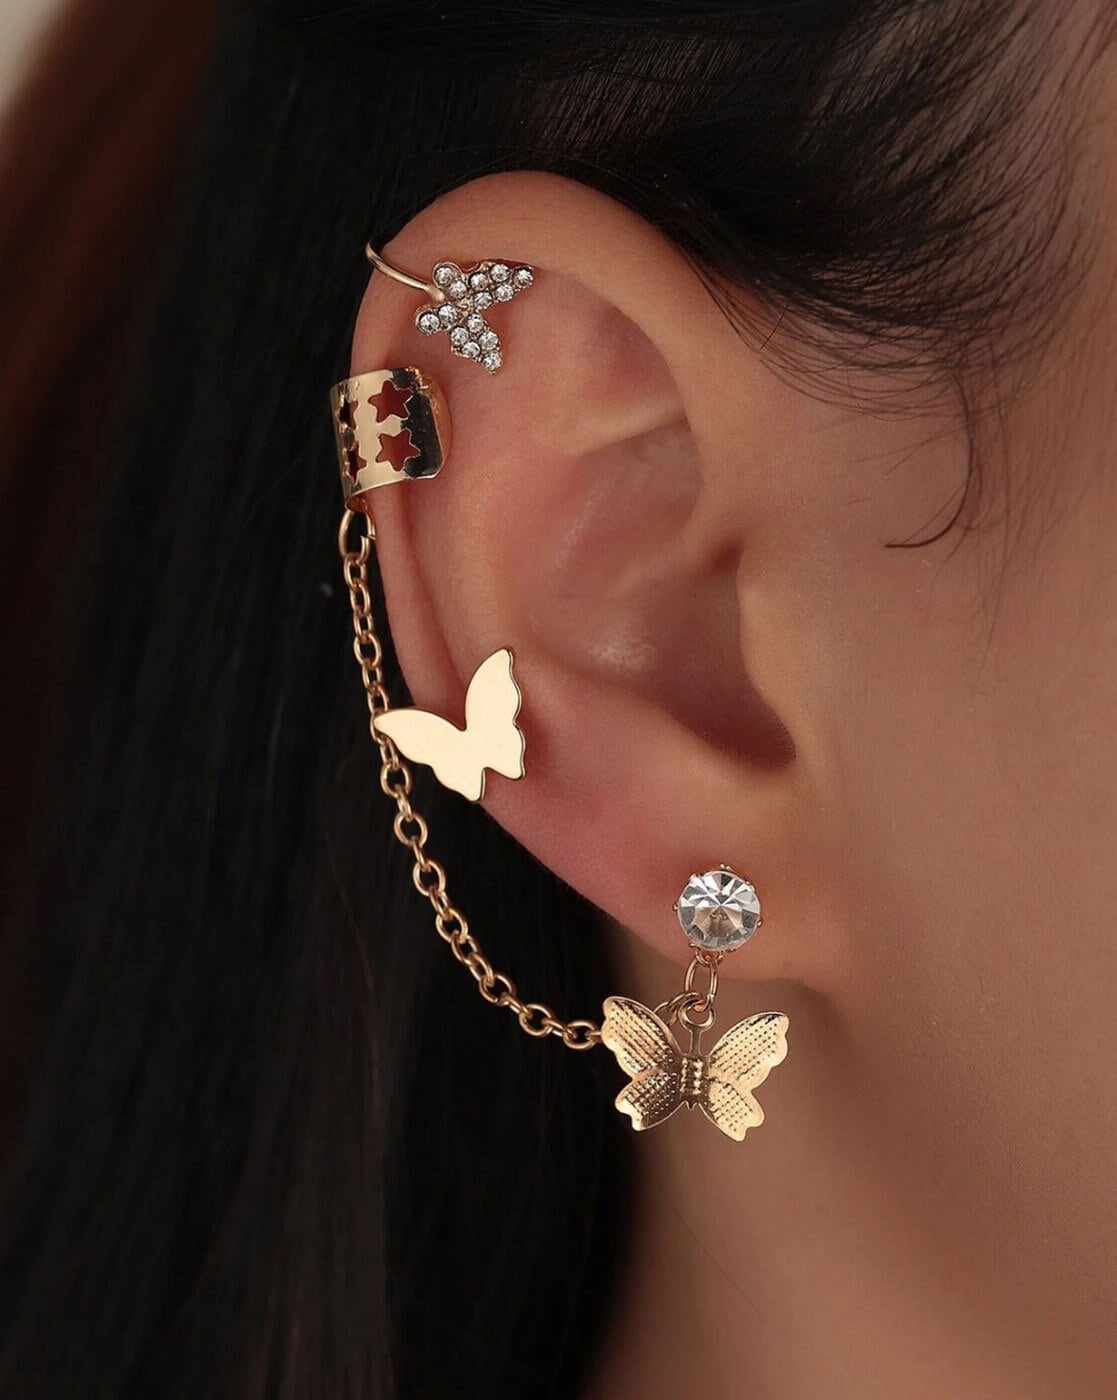 Ear Cuff  Buy Ear Cuffs Earrings online at Best Prices in India   Flipkartcom